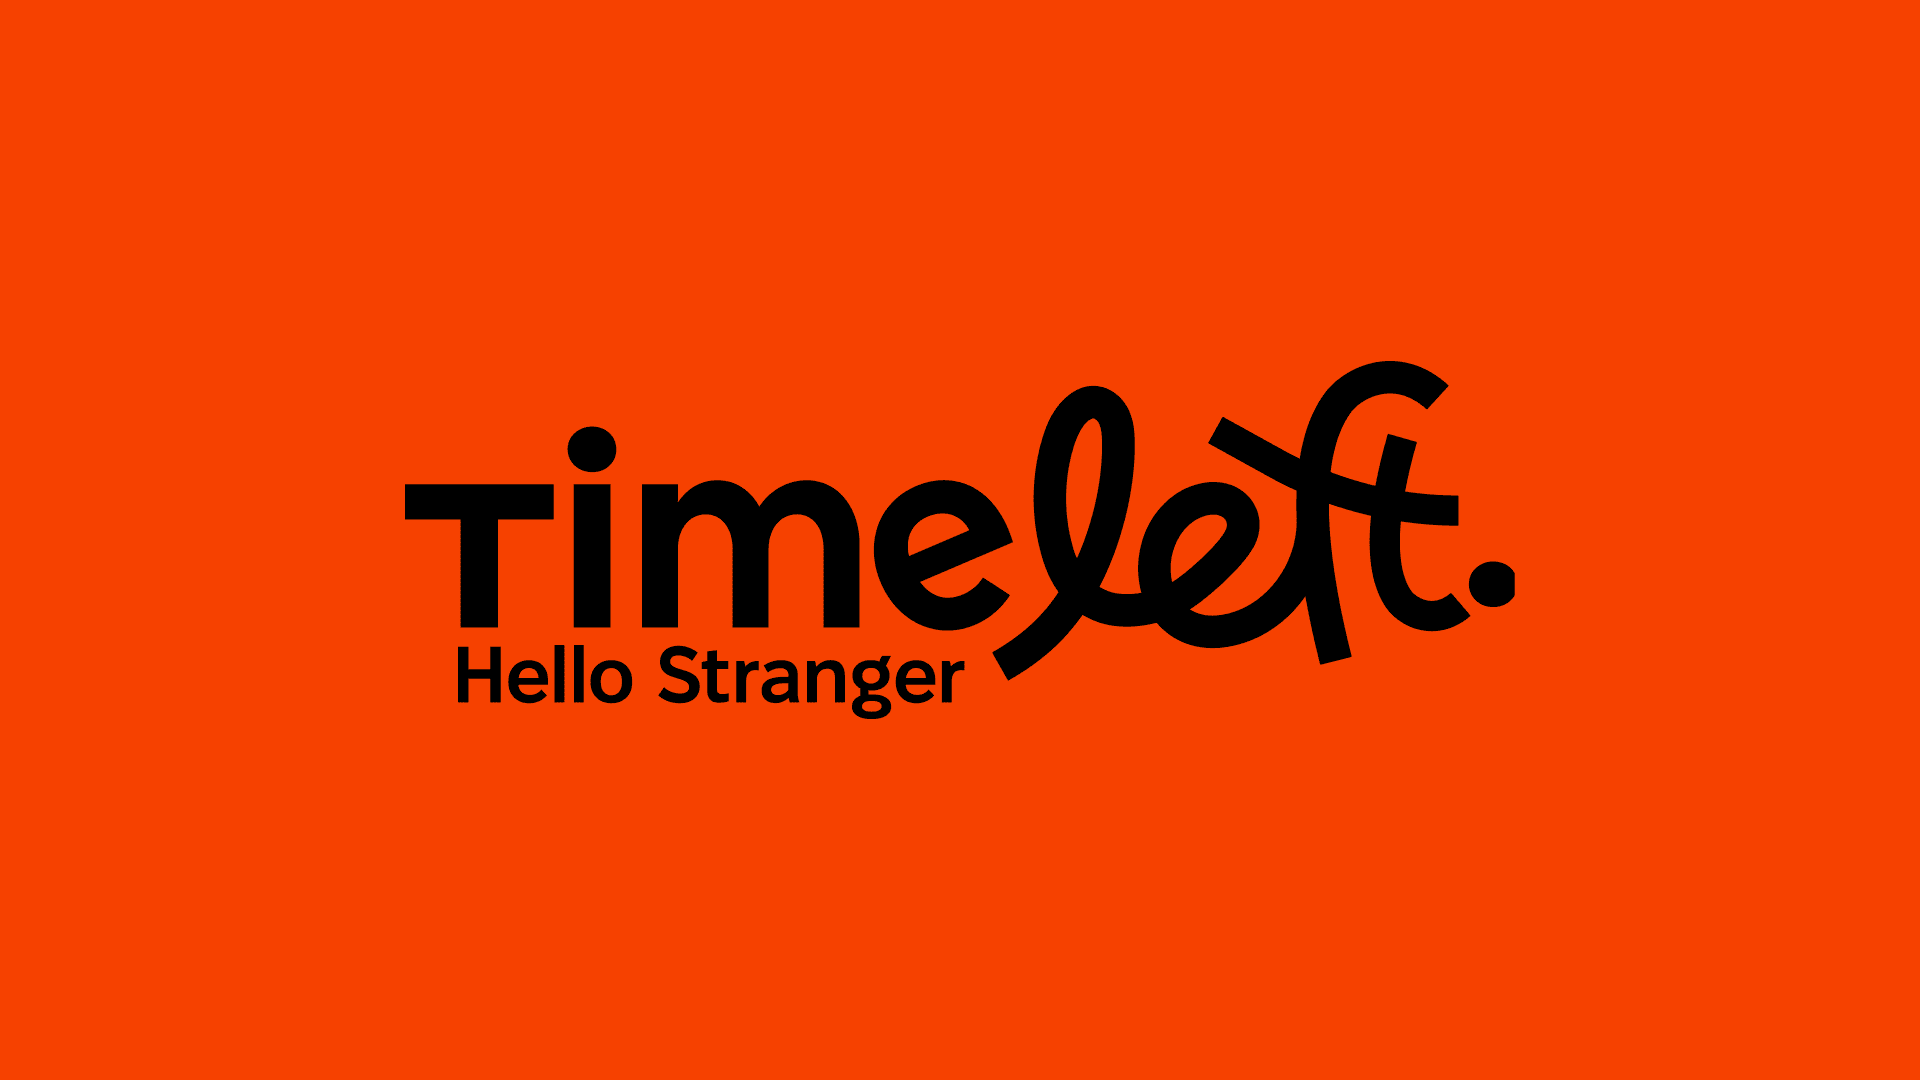 Thumbnail of Timeleft - Hello Stranger